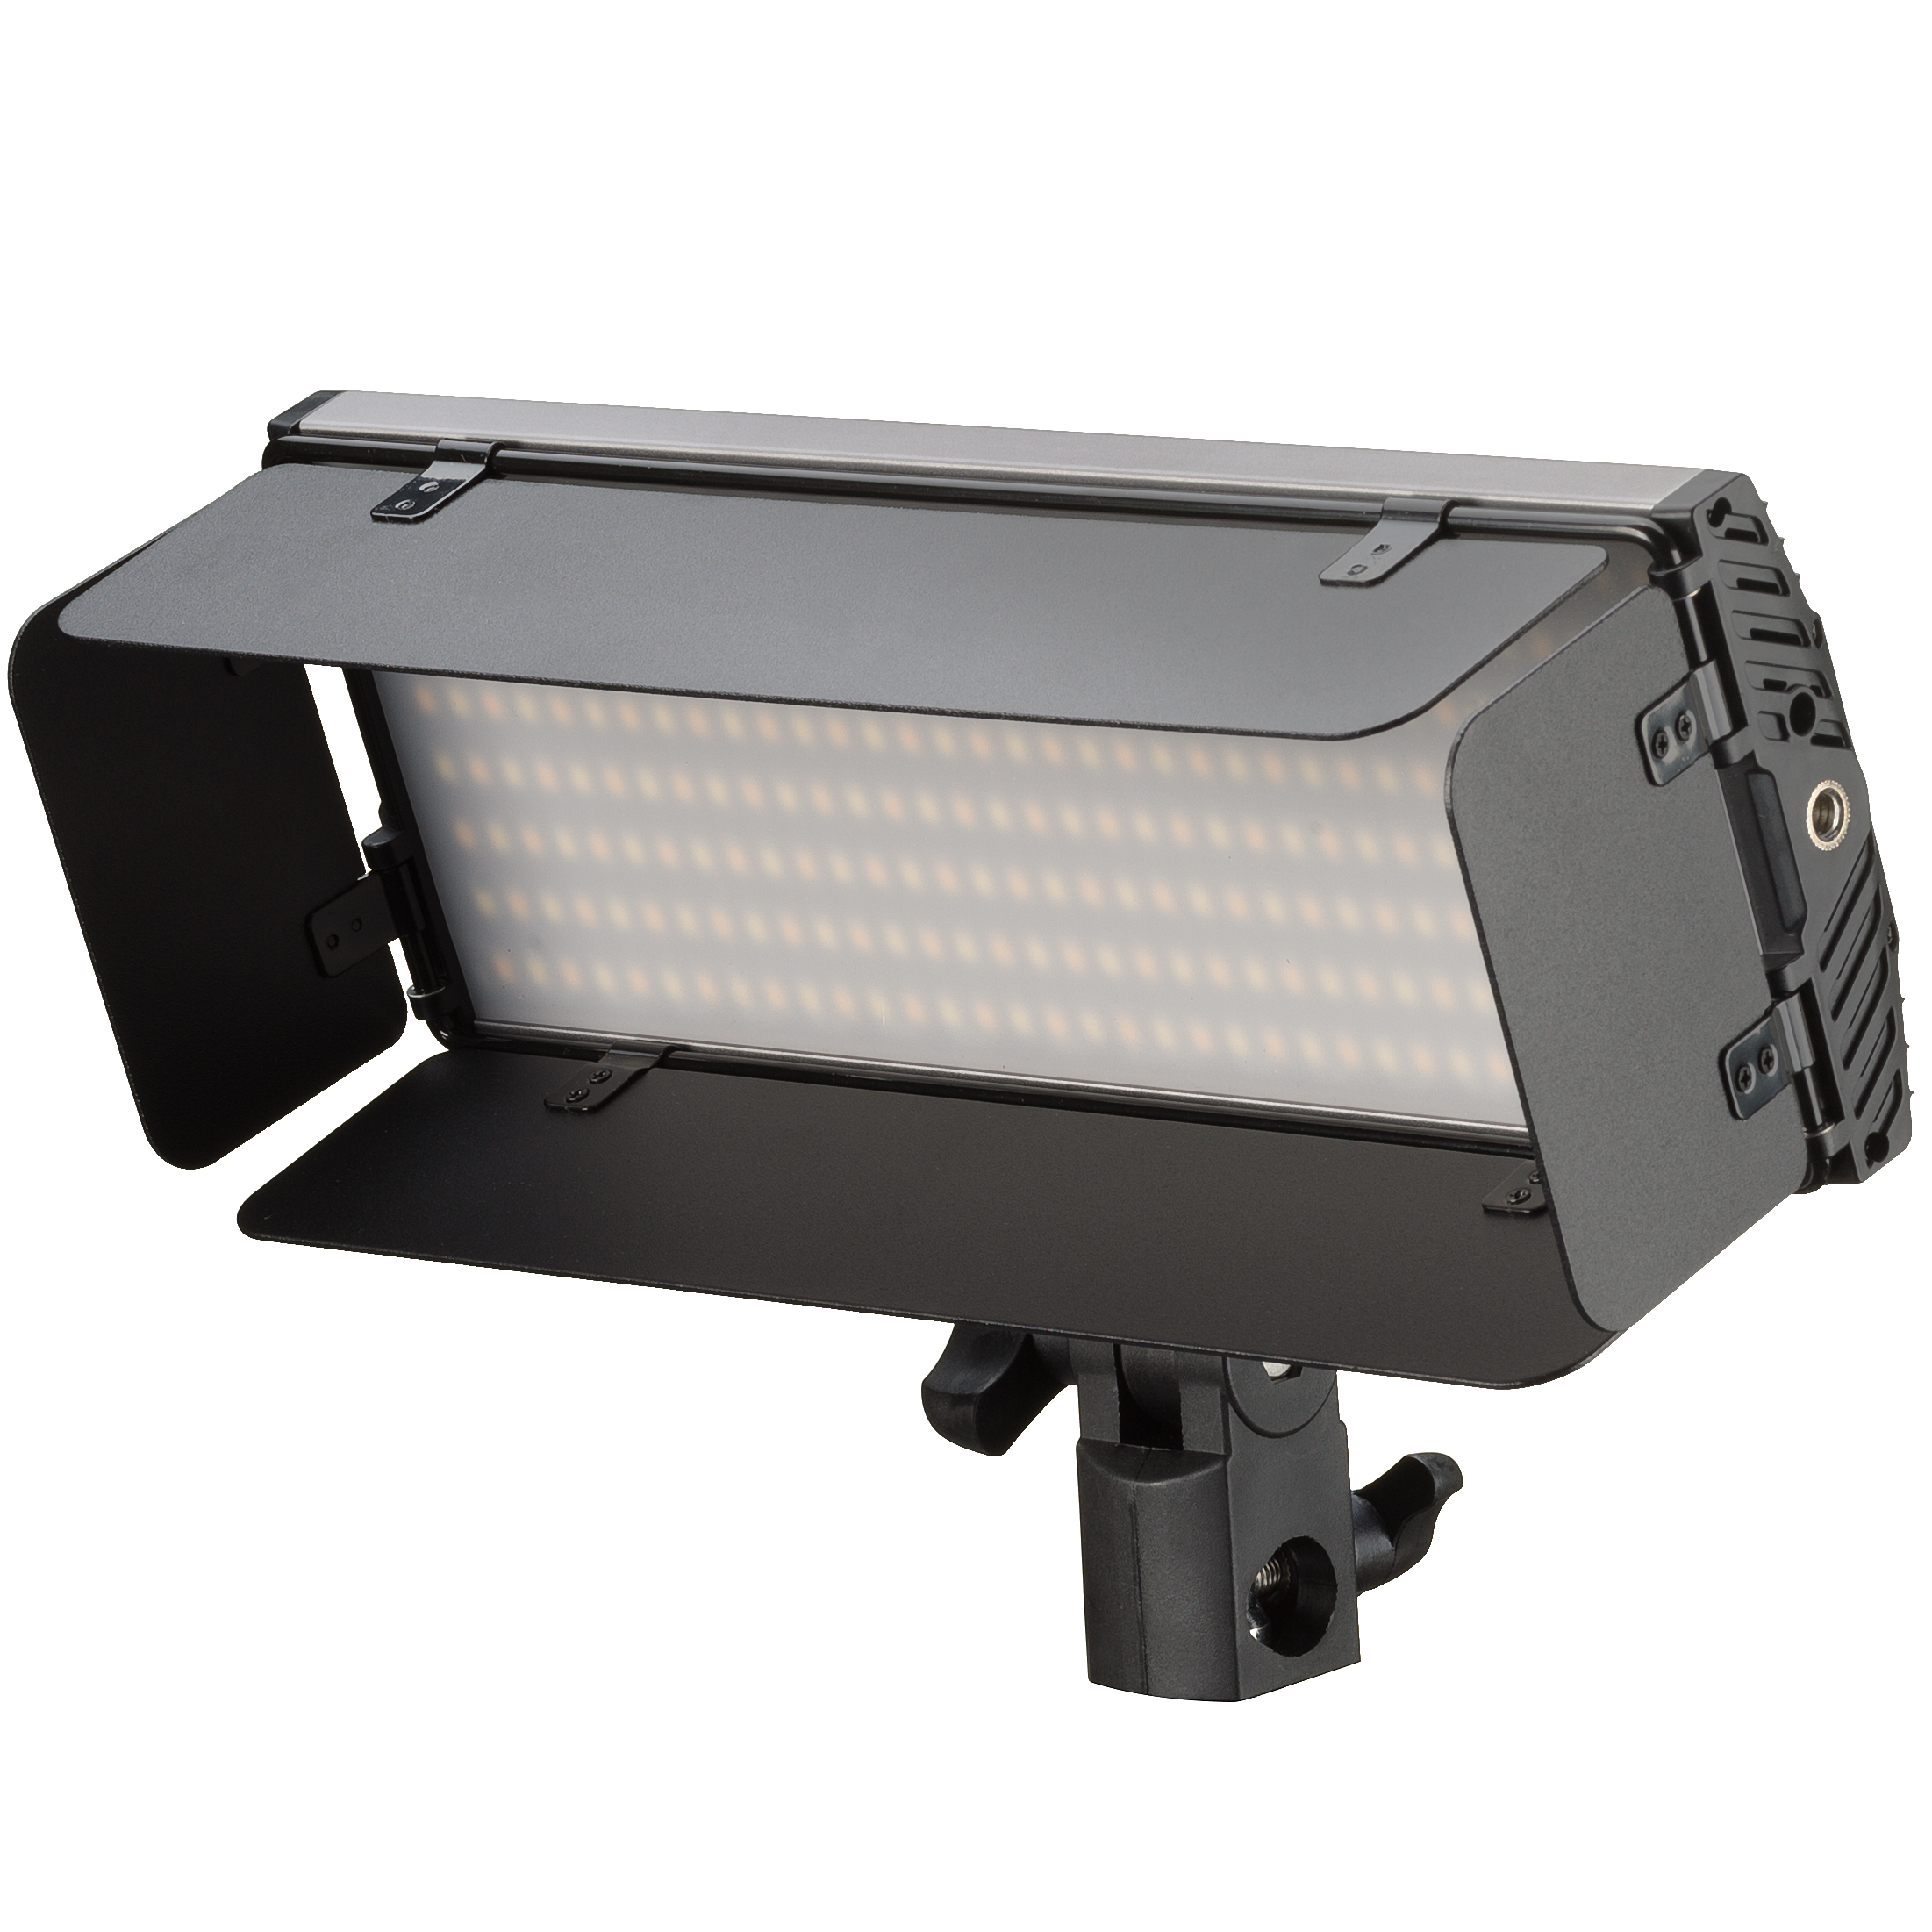 Set di pannelli luminosi bi-colore a LED BRESSER PT 30B-II con alette frangiluce, batterie, alimentatore, telecomando e custodia